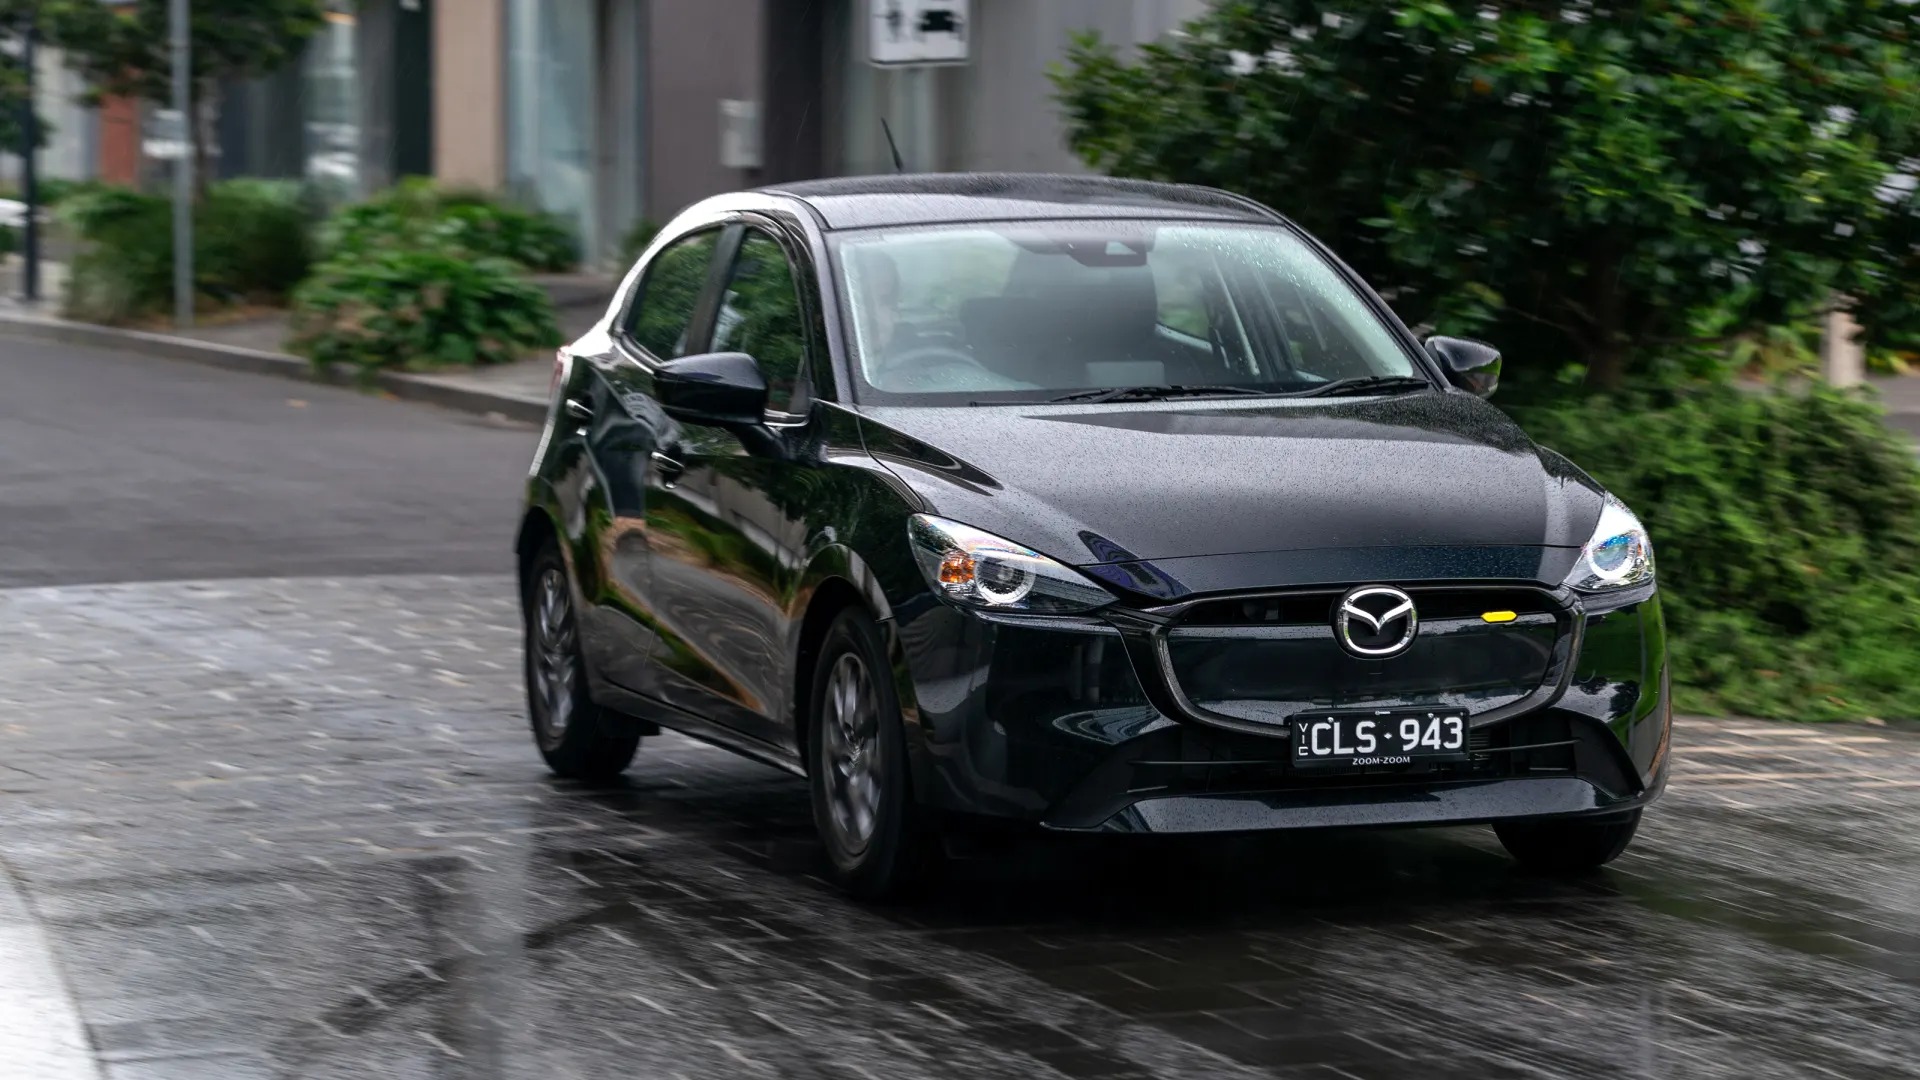 Thêm thông tin về Mazda2 thế hệ mới: Thay khung gầm, dễ có động cơ hybrid - ảnh 1